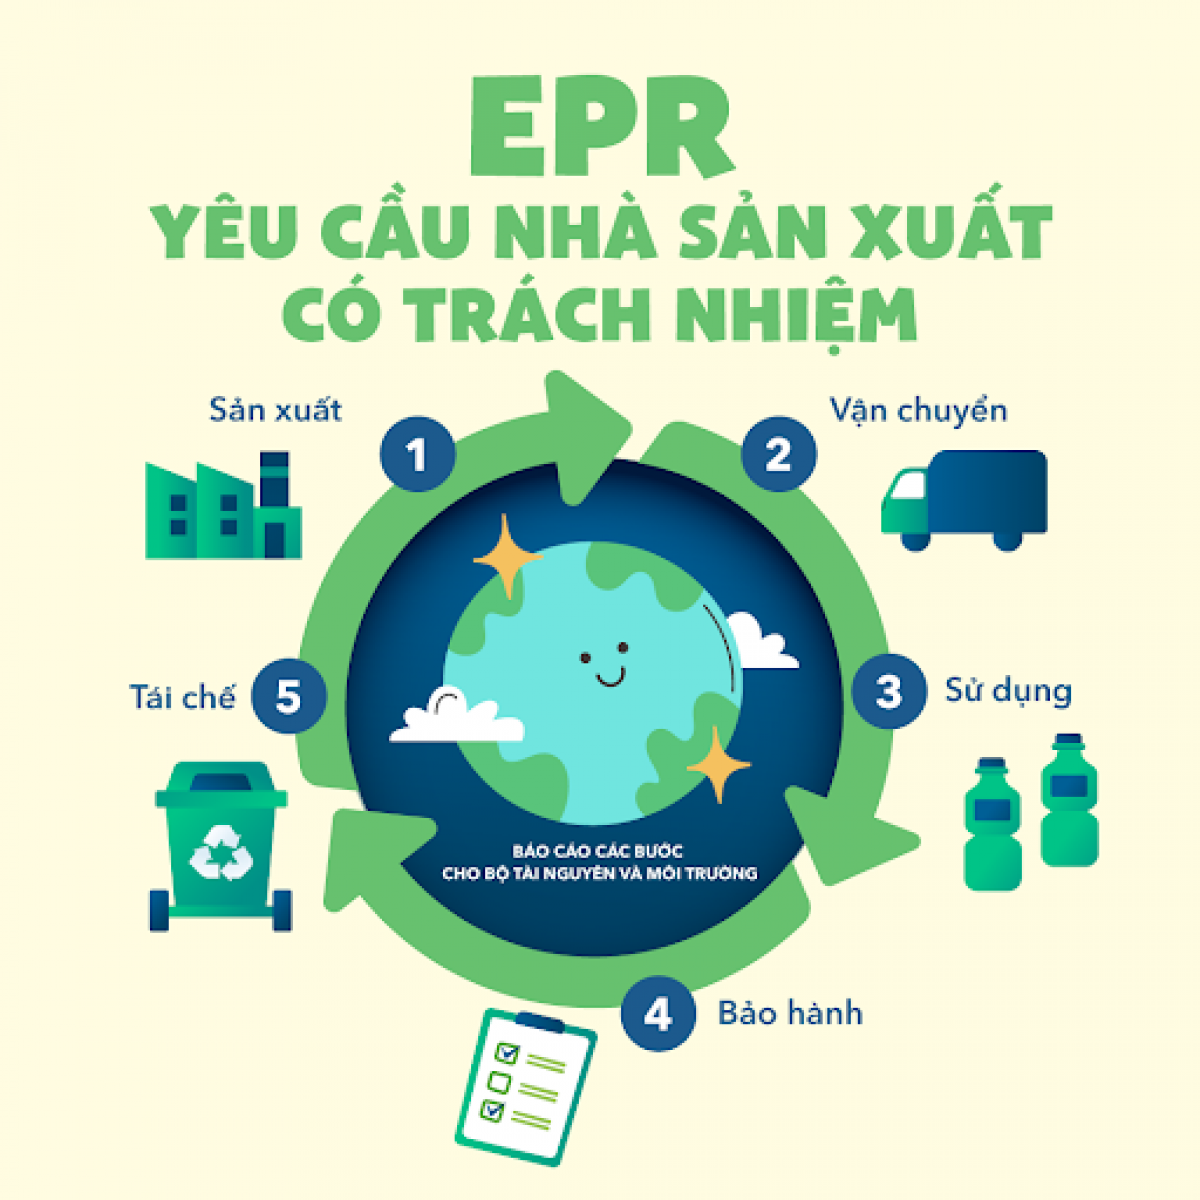 EPR - công cụ quan trọng để thúc đẩy thu gom, tái chế nhựa